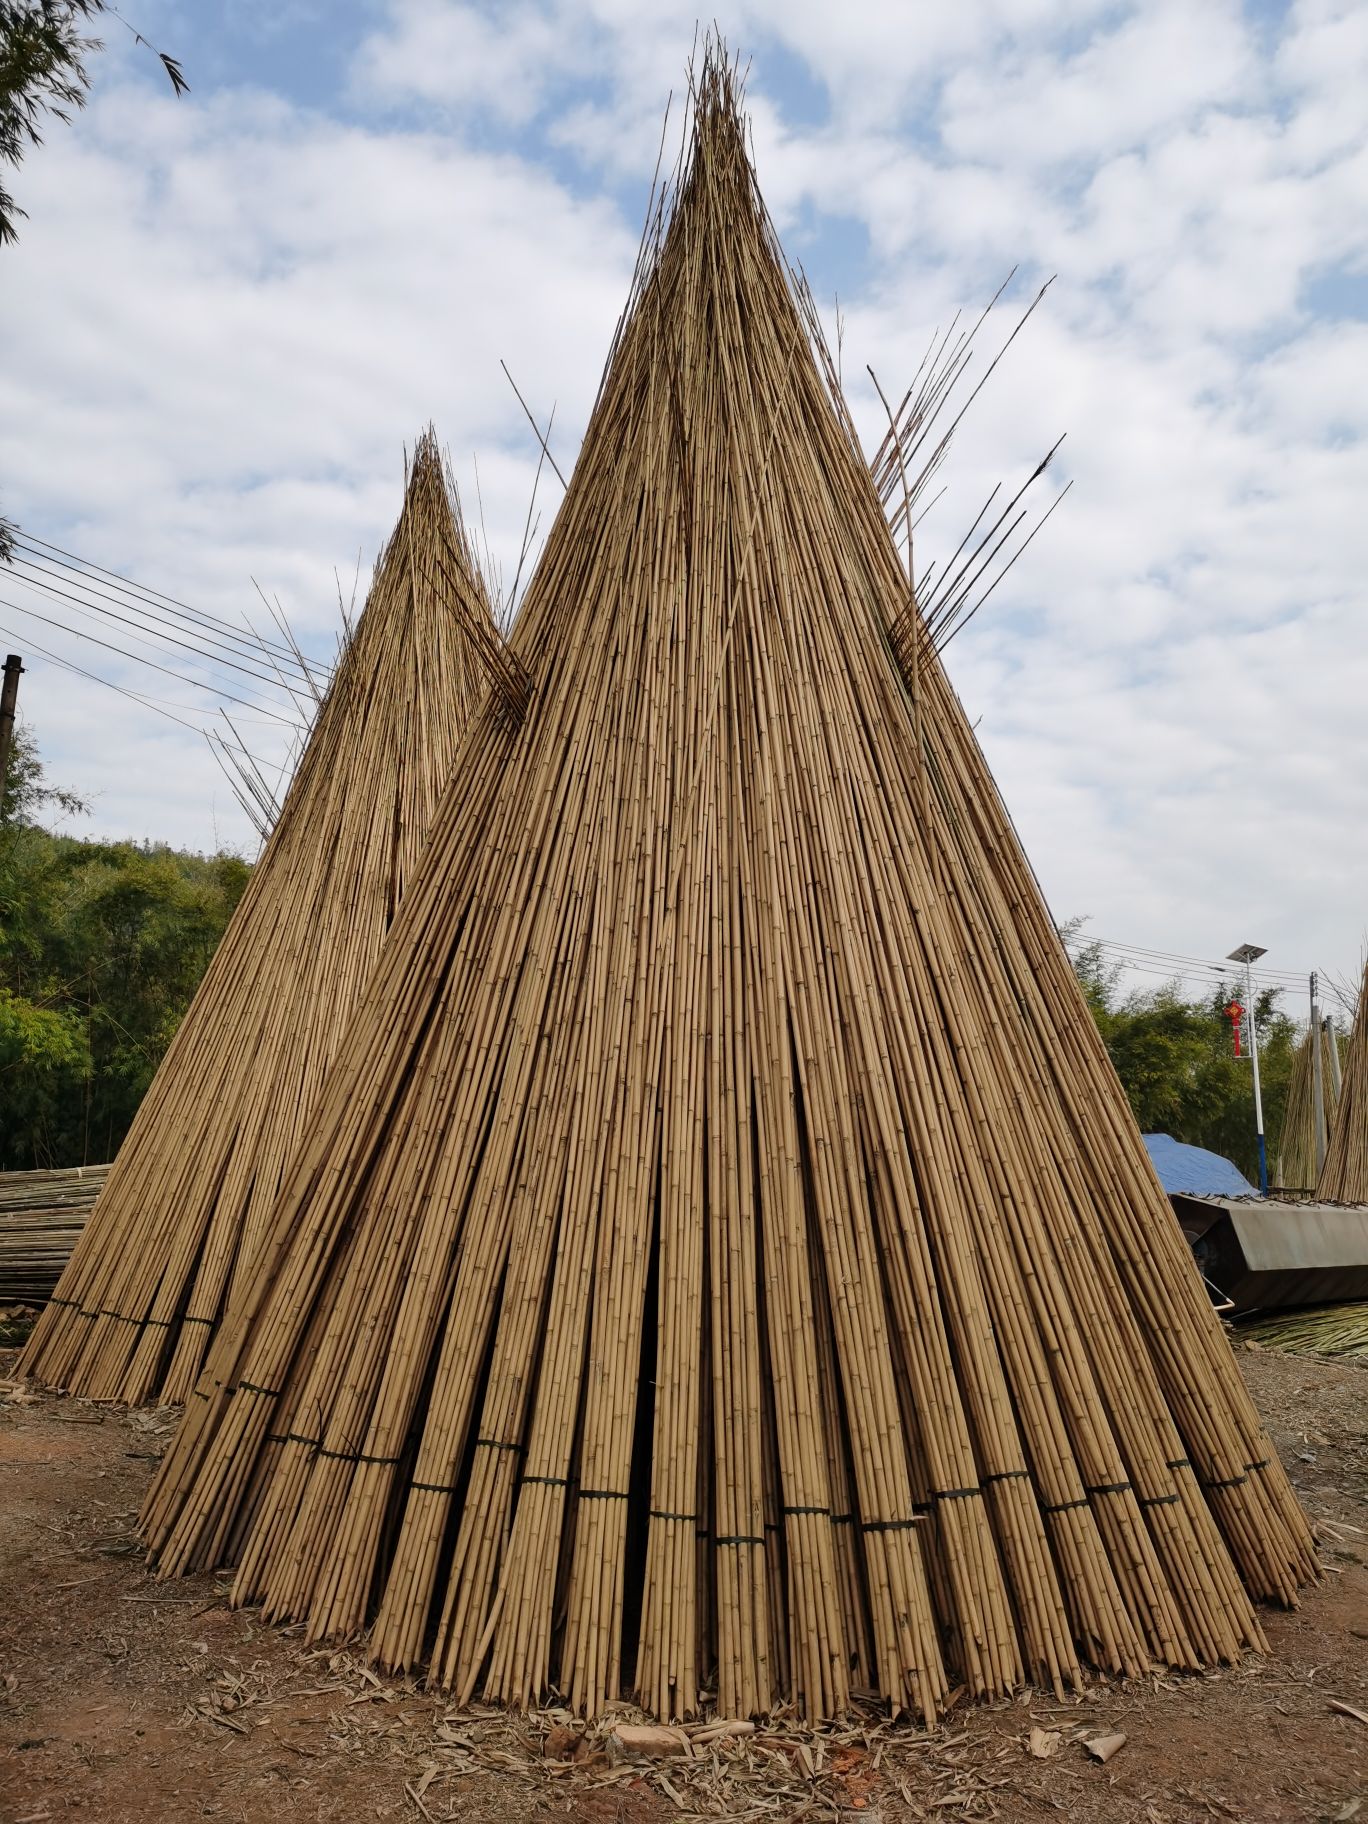 Tyczki bambusowe przygotowane do wyschnięcia.